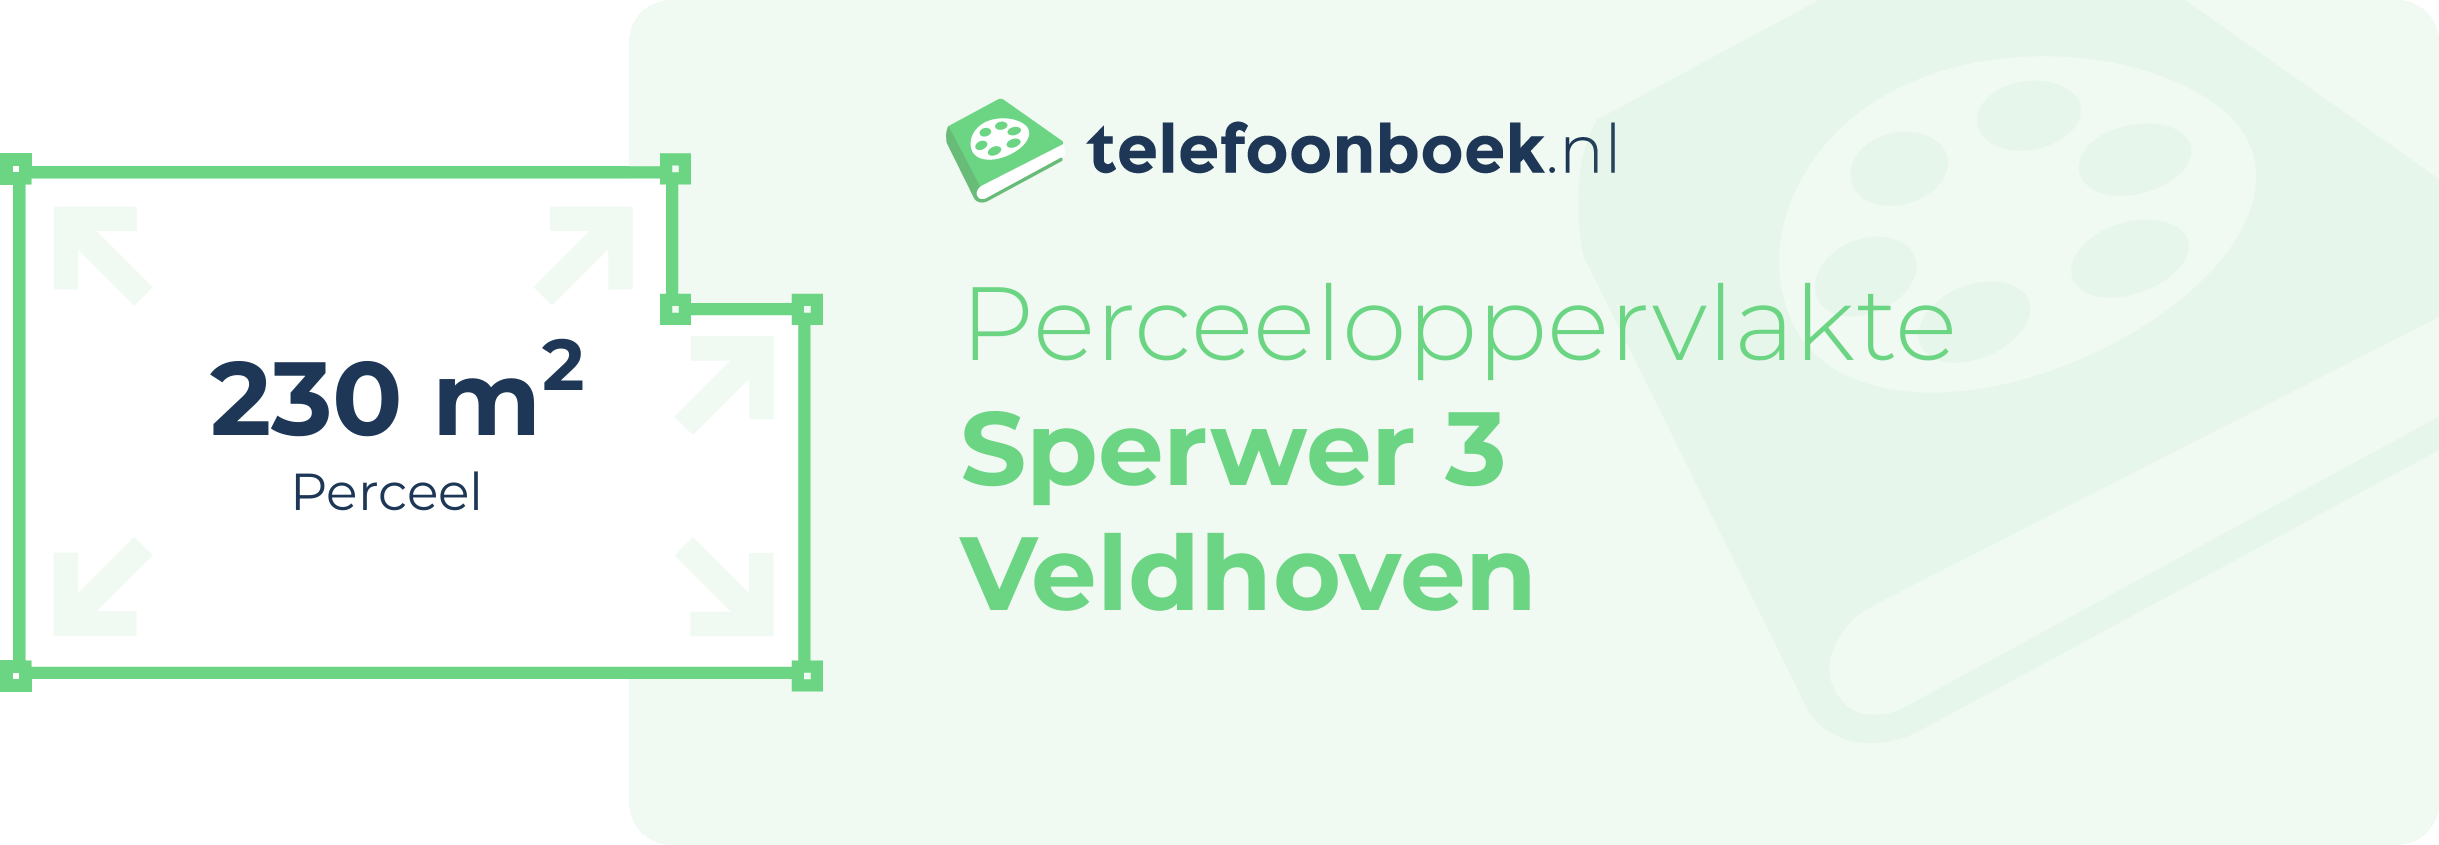 Perceeloppervlakte Sperwer 3 Veldhoven